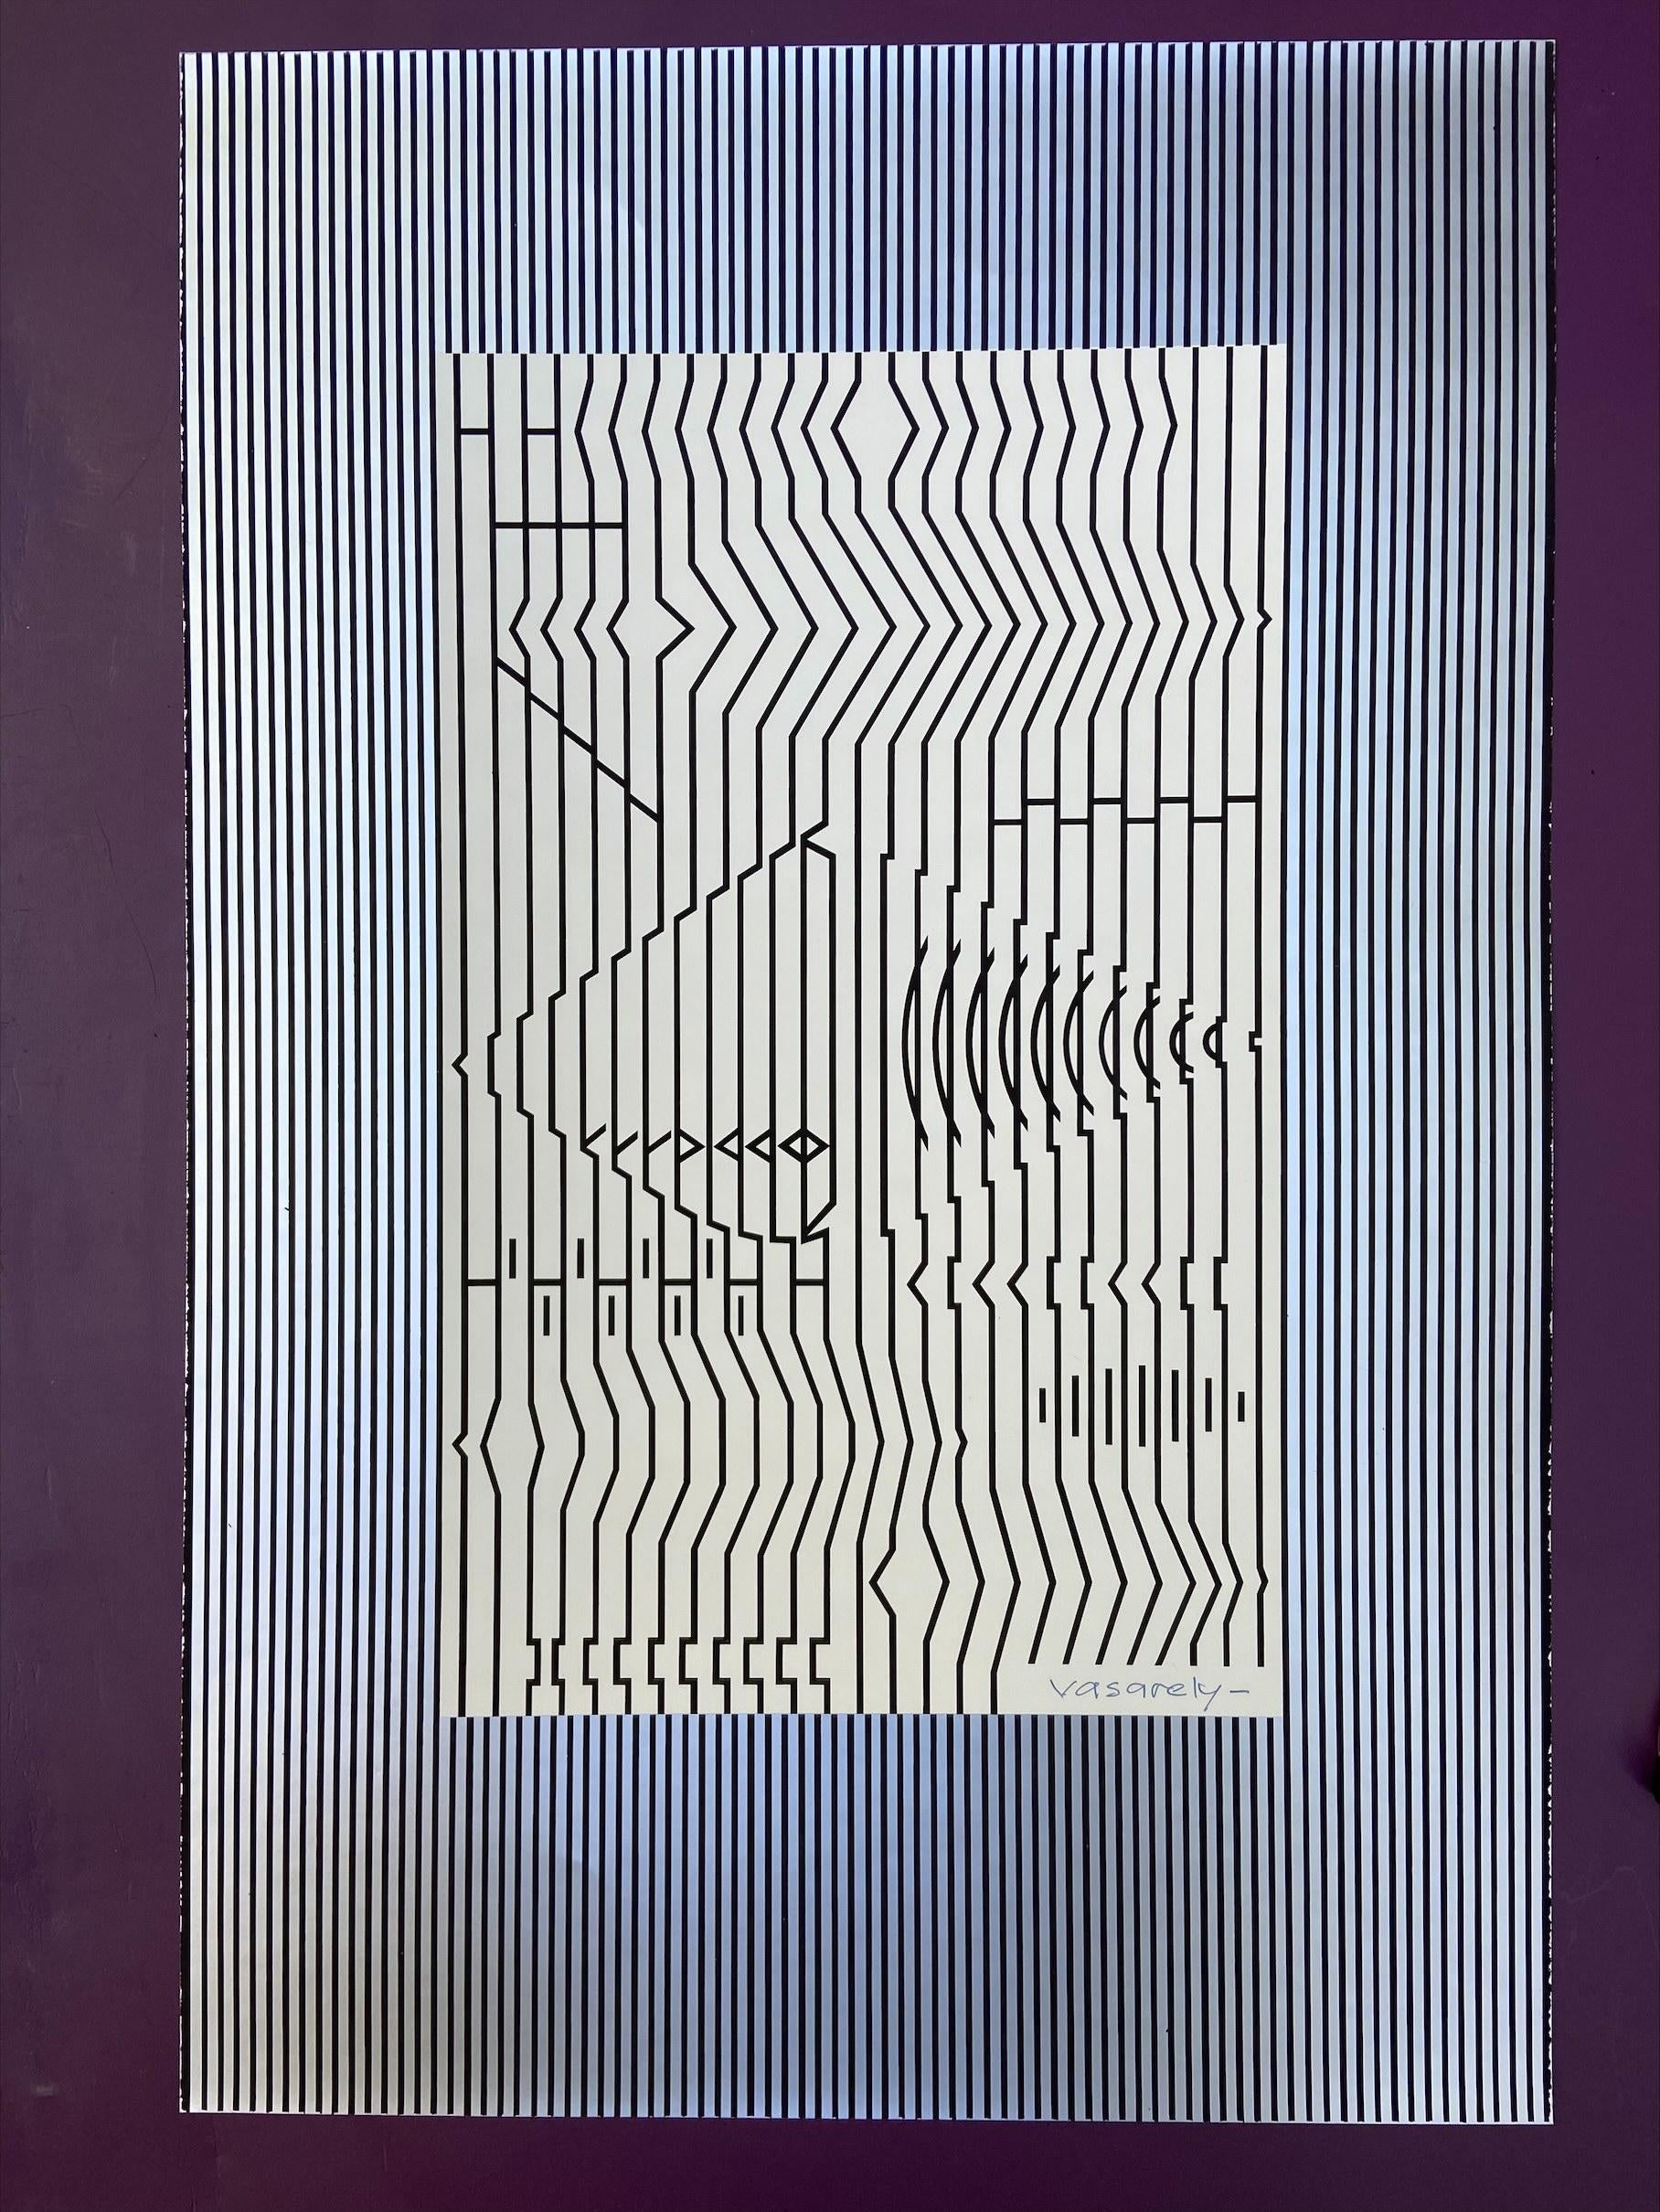 Victor VASARELY (1908-1997) - Cithare
Sérigraphie sur carton avec fond argenté en relief 
signé en en bas à droite 
Hauteur : 60 cm - Largeur : 40 cm
1973
900€